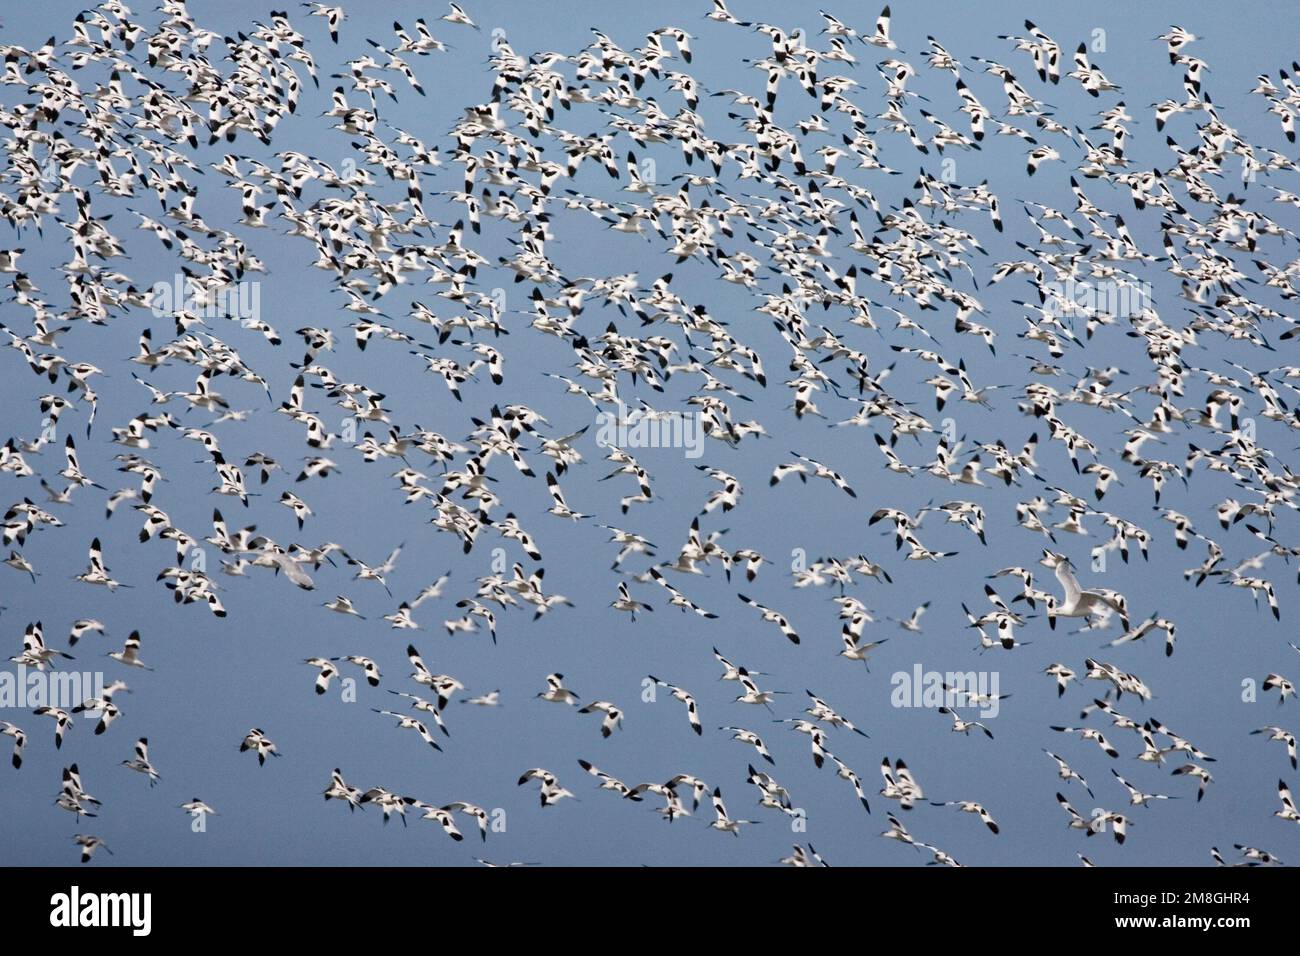 Pied Avocet Herde fliegen; Kluut groep Vliegend Stockfoto